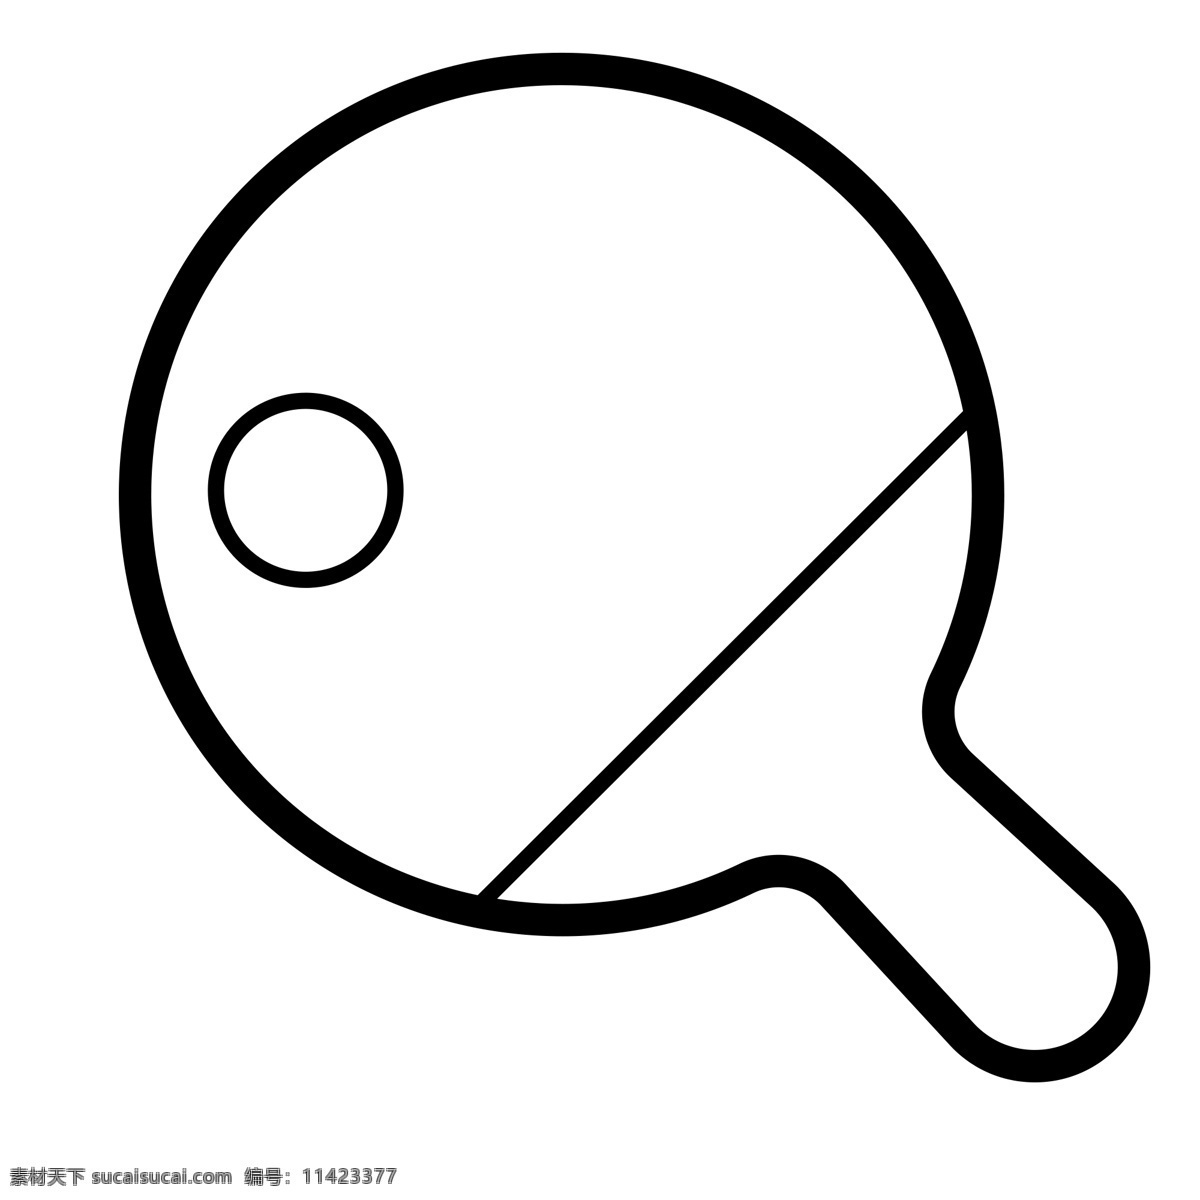 黑色 创意 乒乓球 拍子 元素 扁平化 ui 图标 线稿 运动 锻炼 体育 活动 圆球